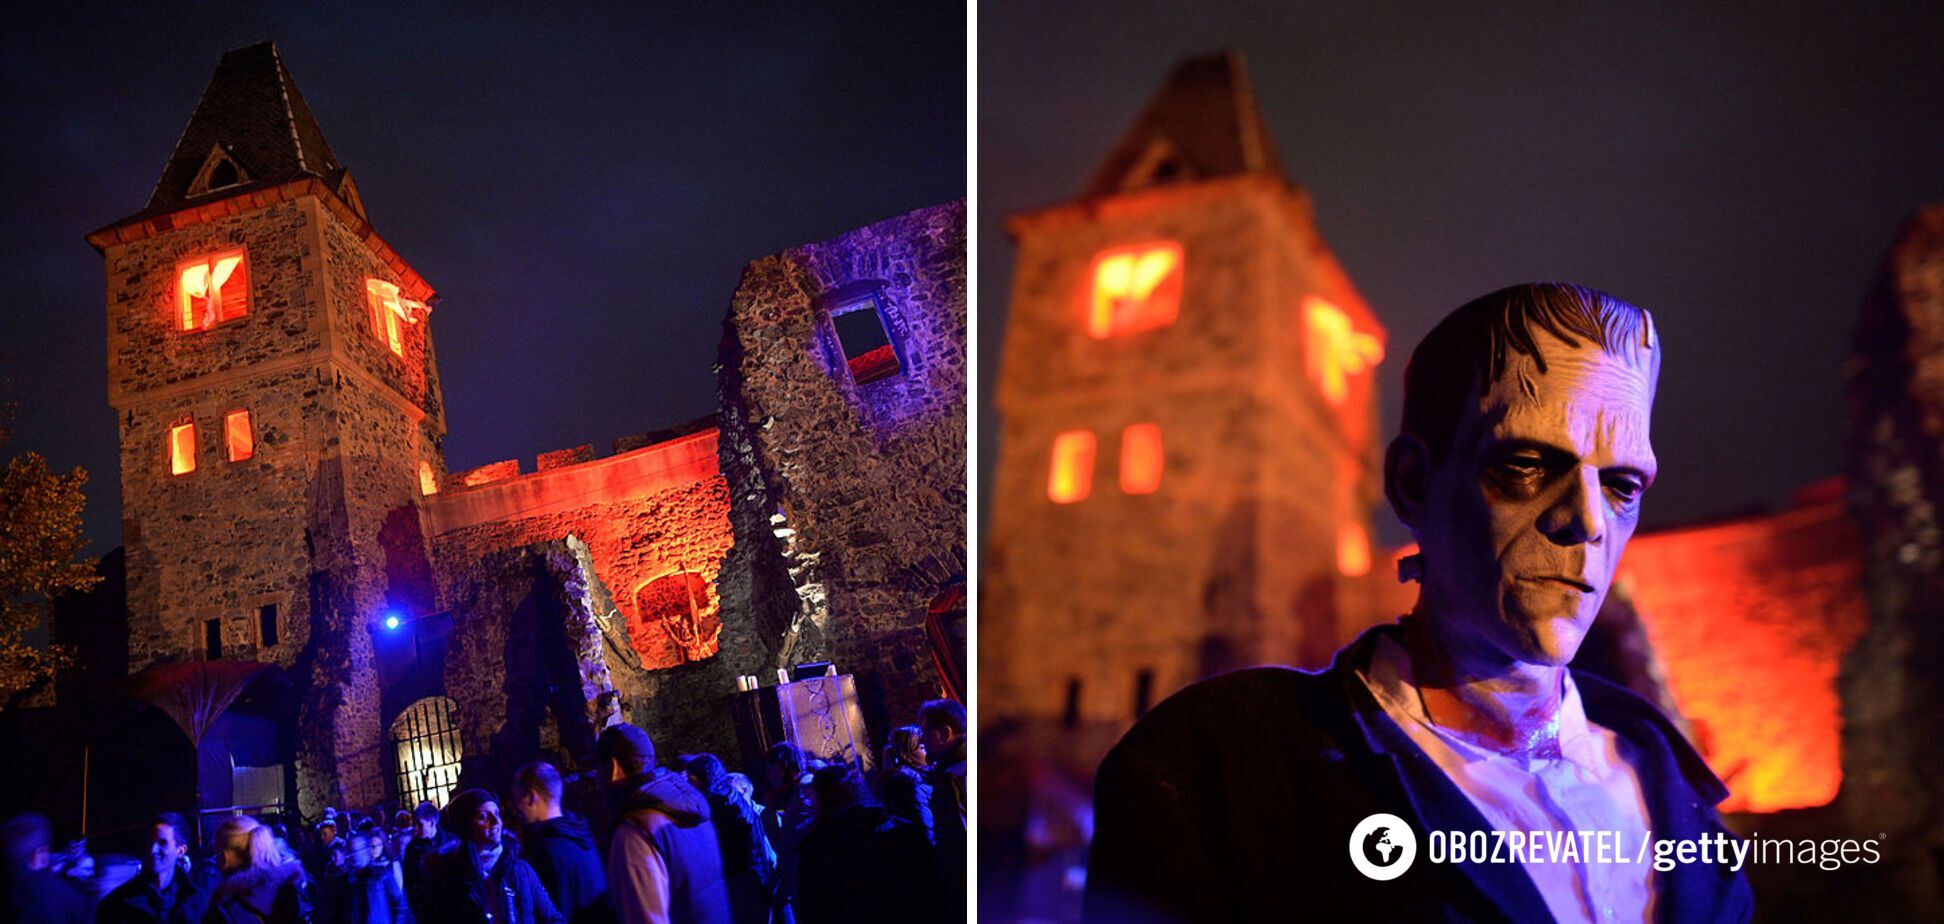 Ежегодно в замке Франкенштейна празднуют Хэллоуин.